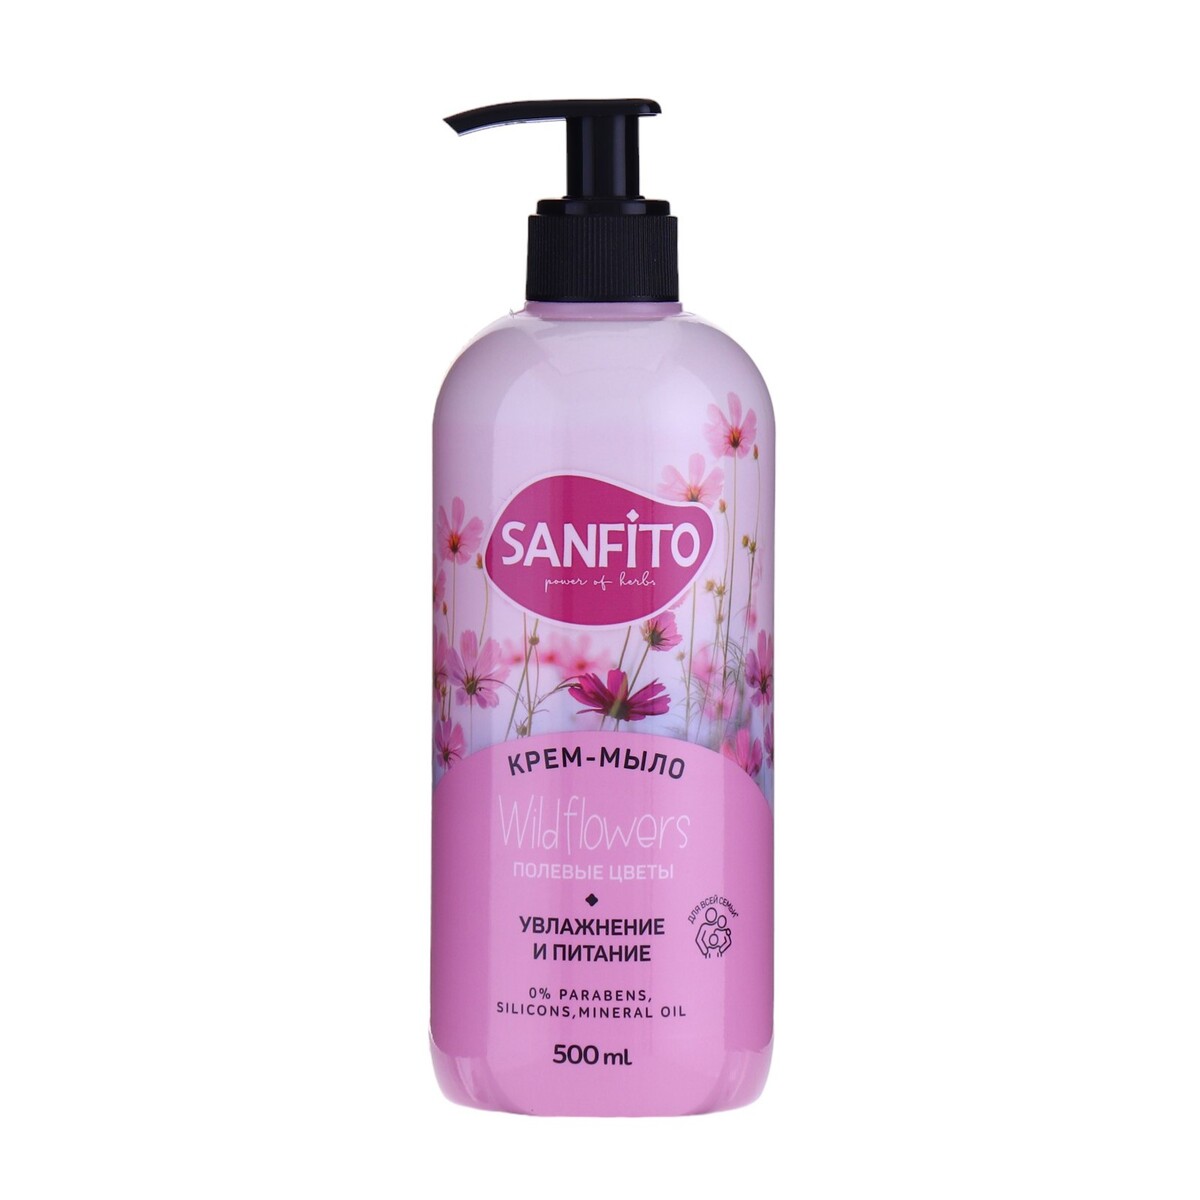 Sanfito крем-мыло sensitive, полевые цветы, 500 мл крем мыло жидкое sanfito sensitive полевые ы 1 л